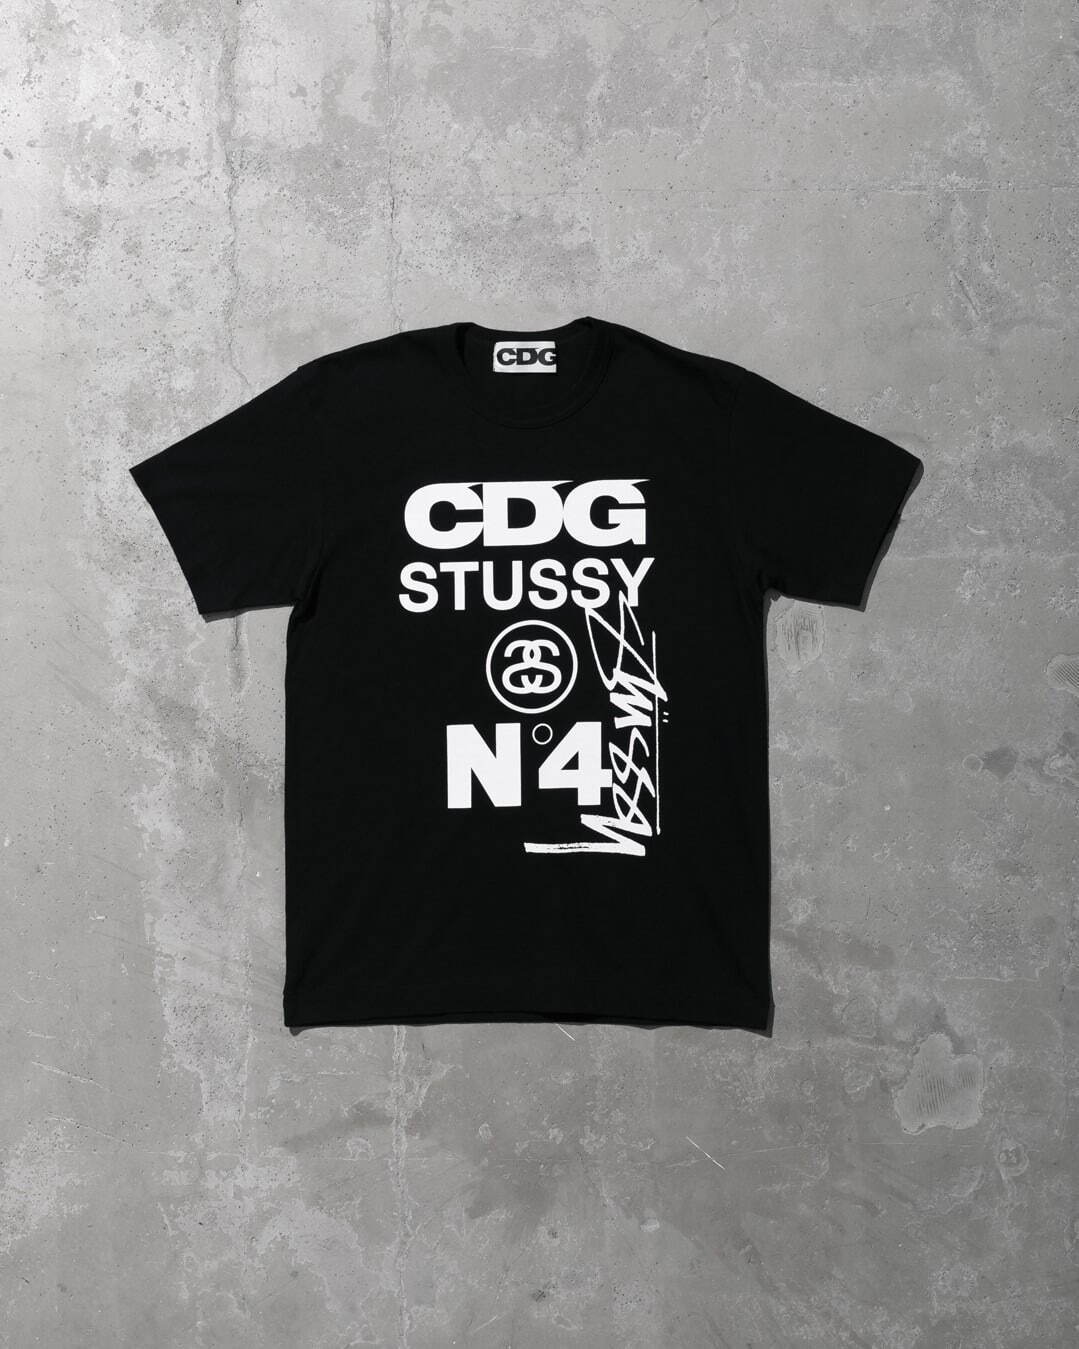 コム デ ギャルソンのcdg ステューシー新作 ロゴ入り白黒tシャツやコーチジャケット ファッションプレス